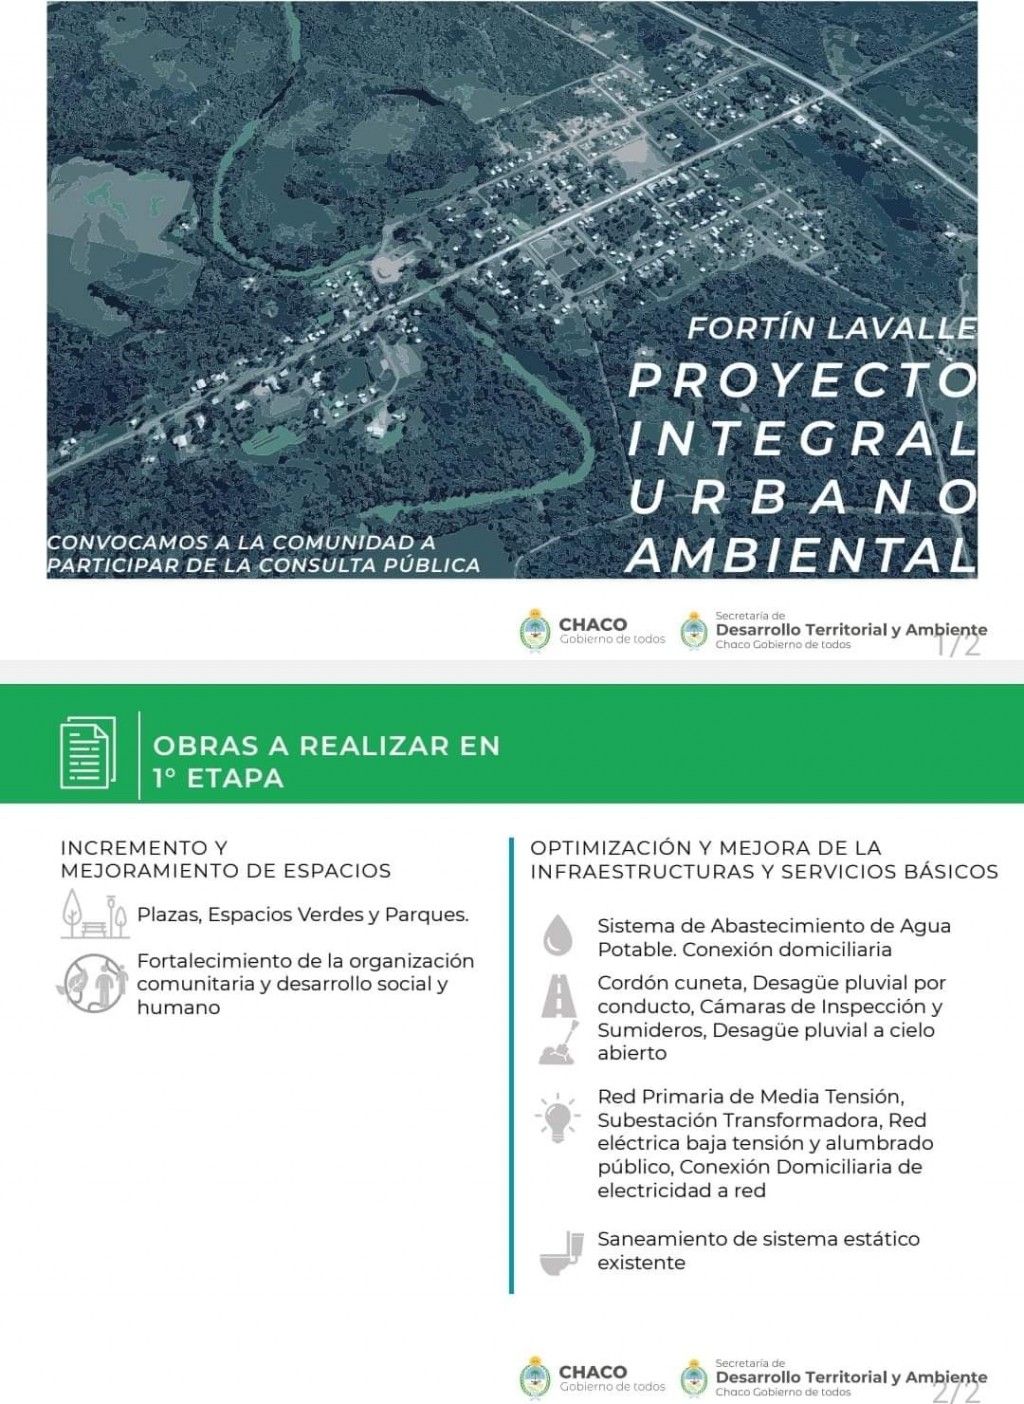 Consulta pública para debatir proyectos de urbanización de Fortín Lavalle y Colonia Aborigen y Nueva Población